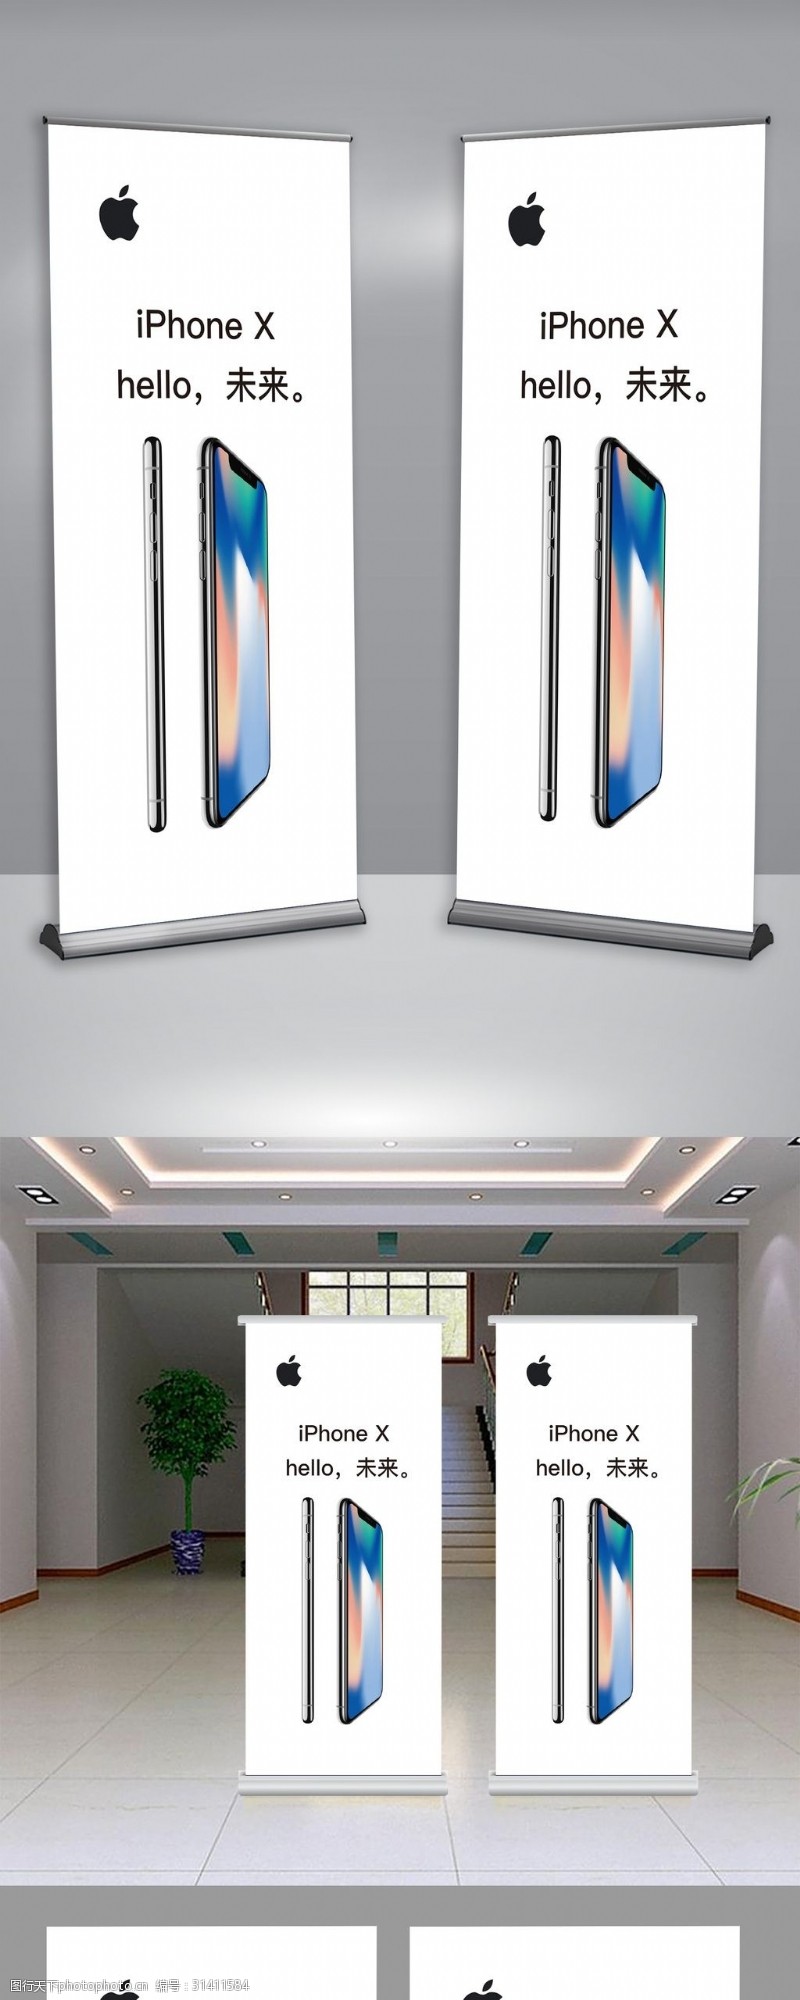 手喷苹果苹果官方iPhone8X展架易拉宝展架